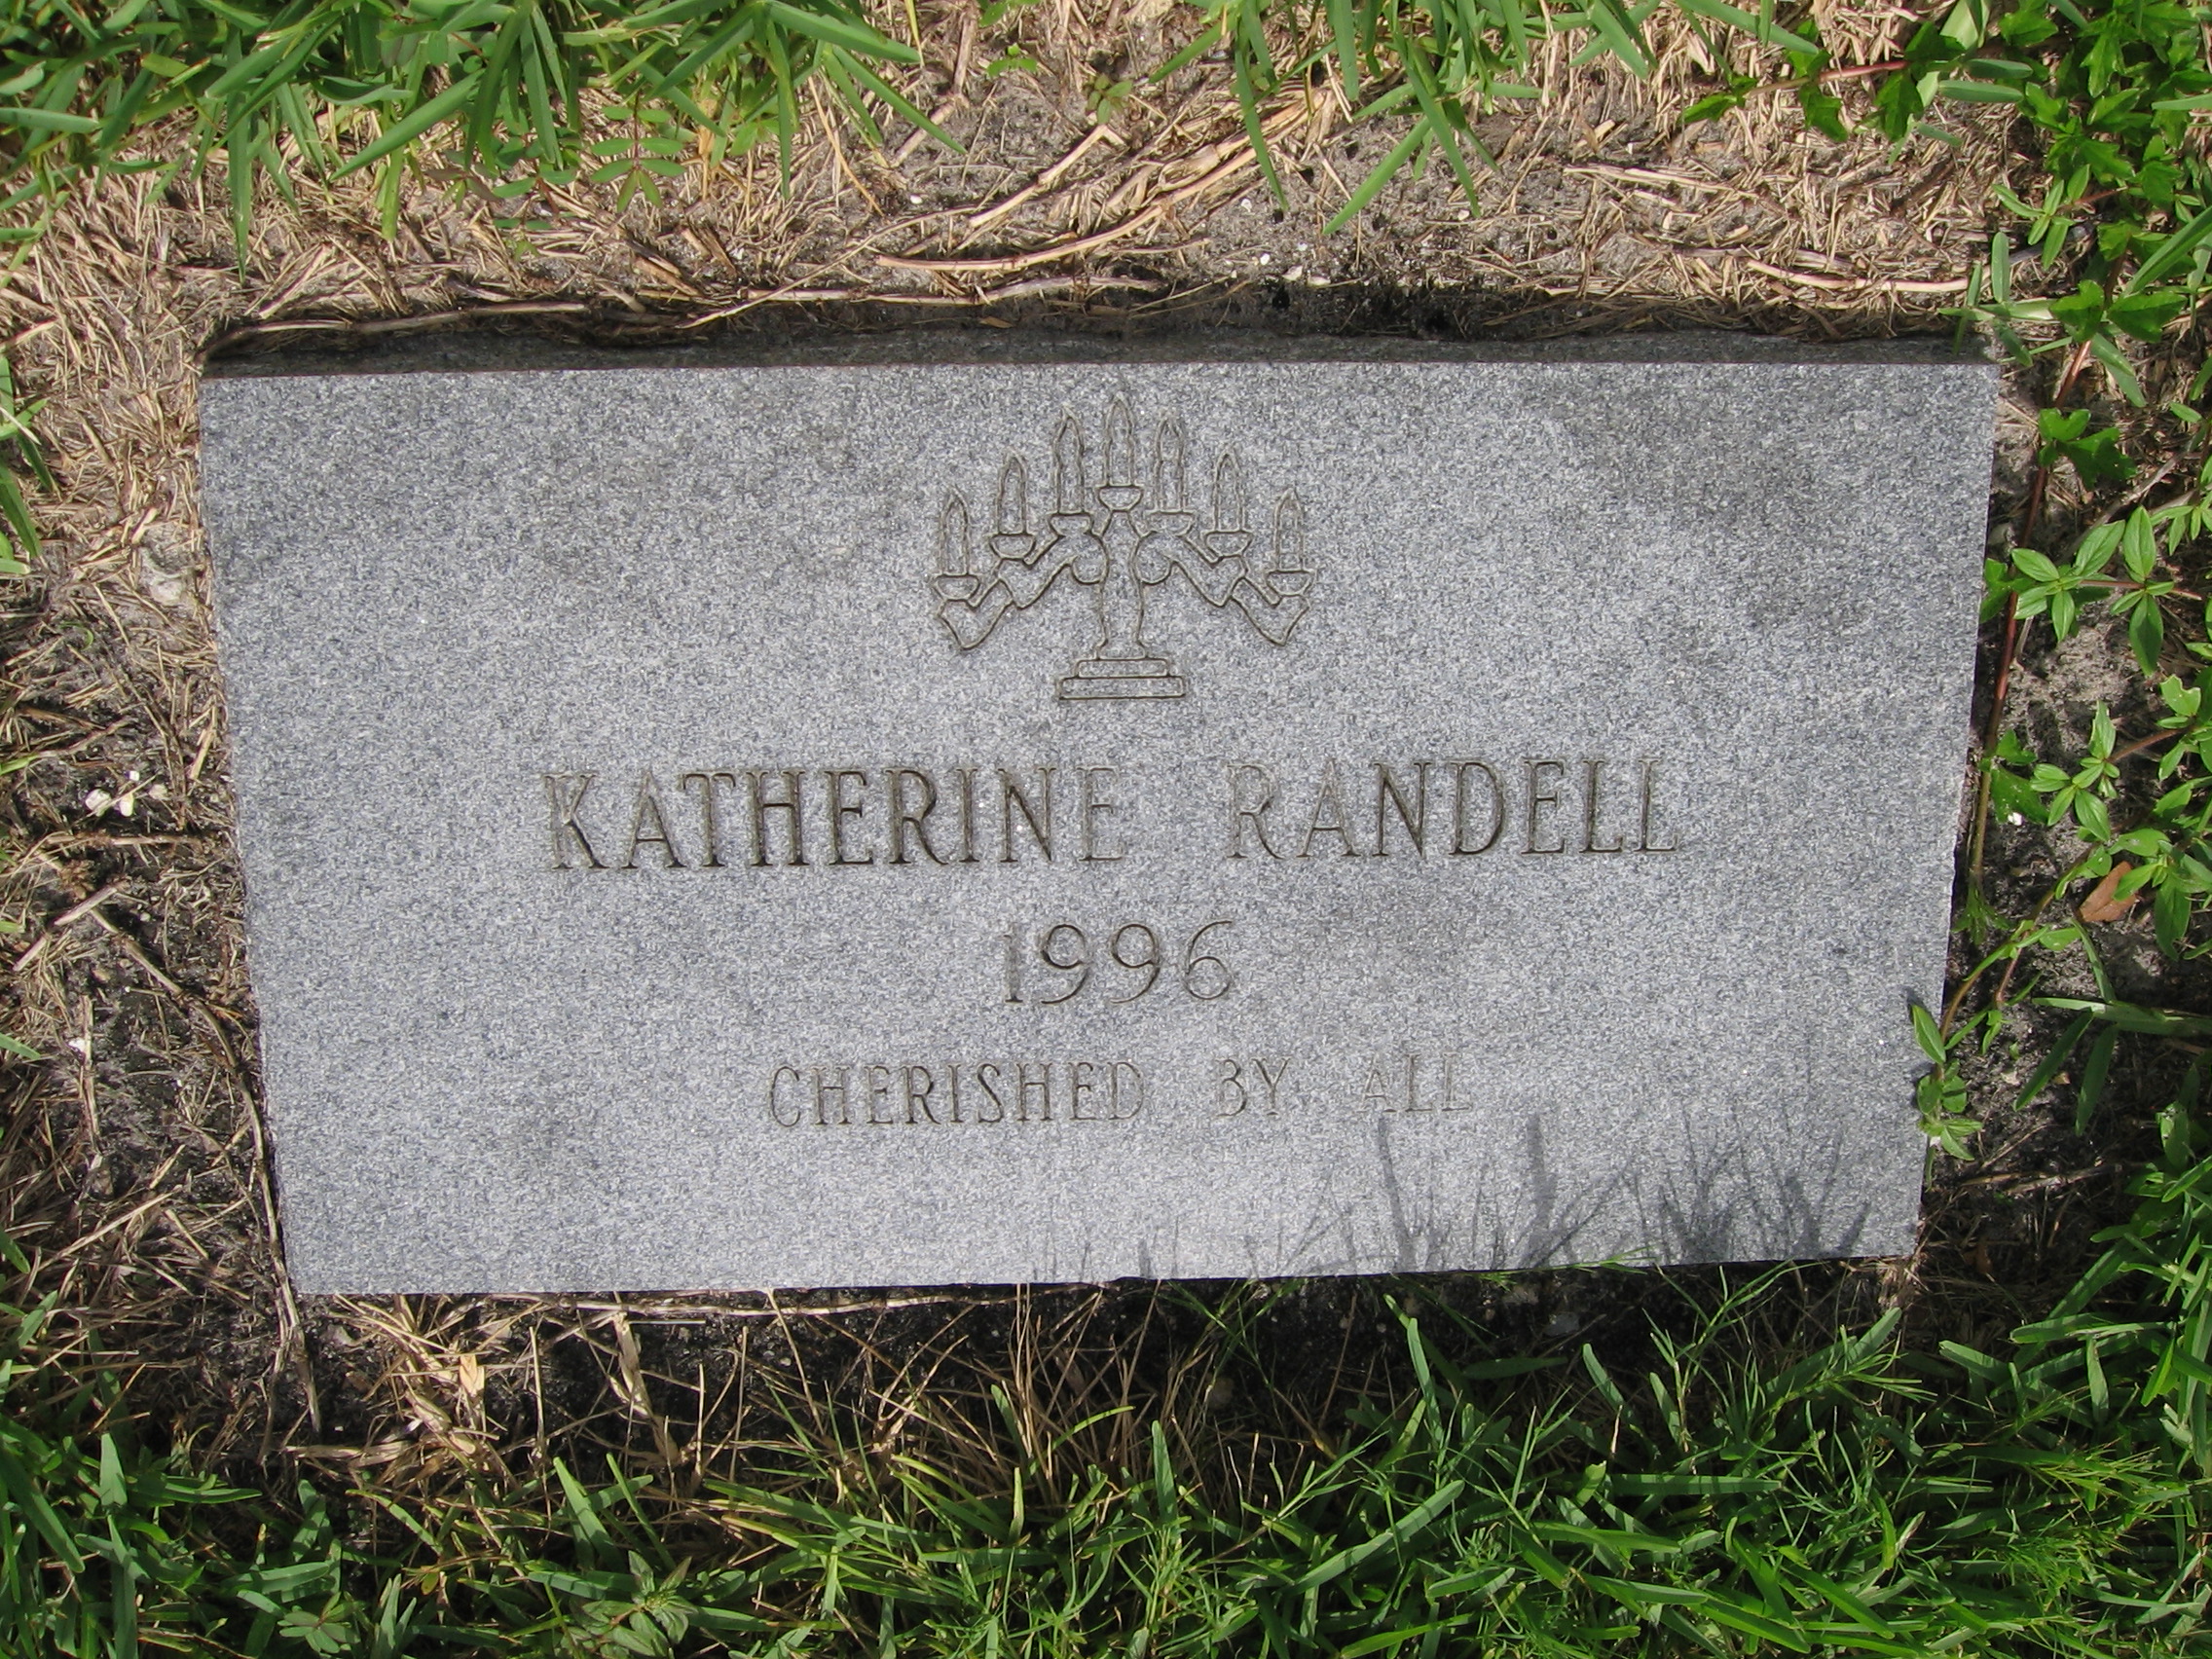 Katherine Randell